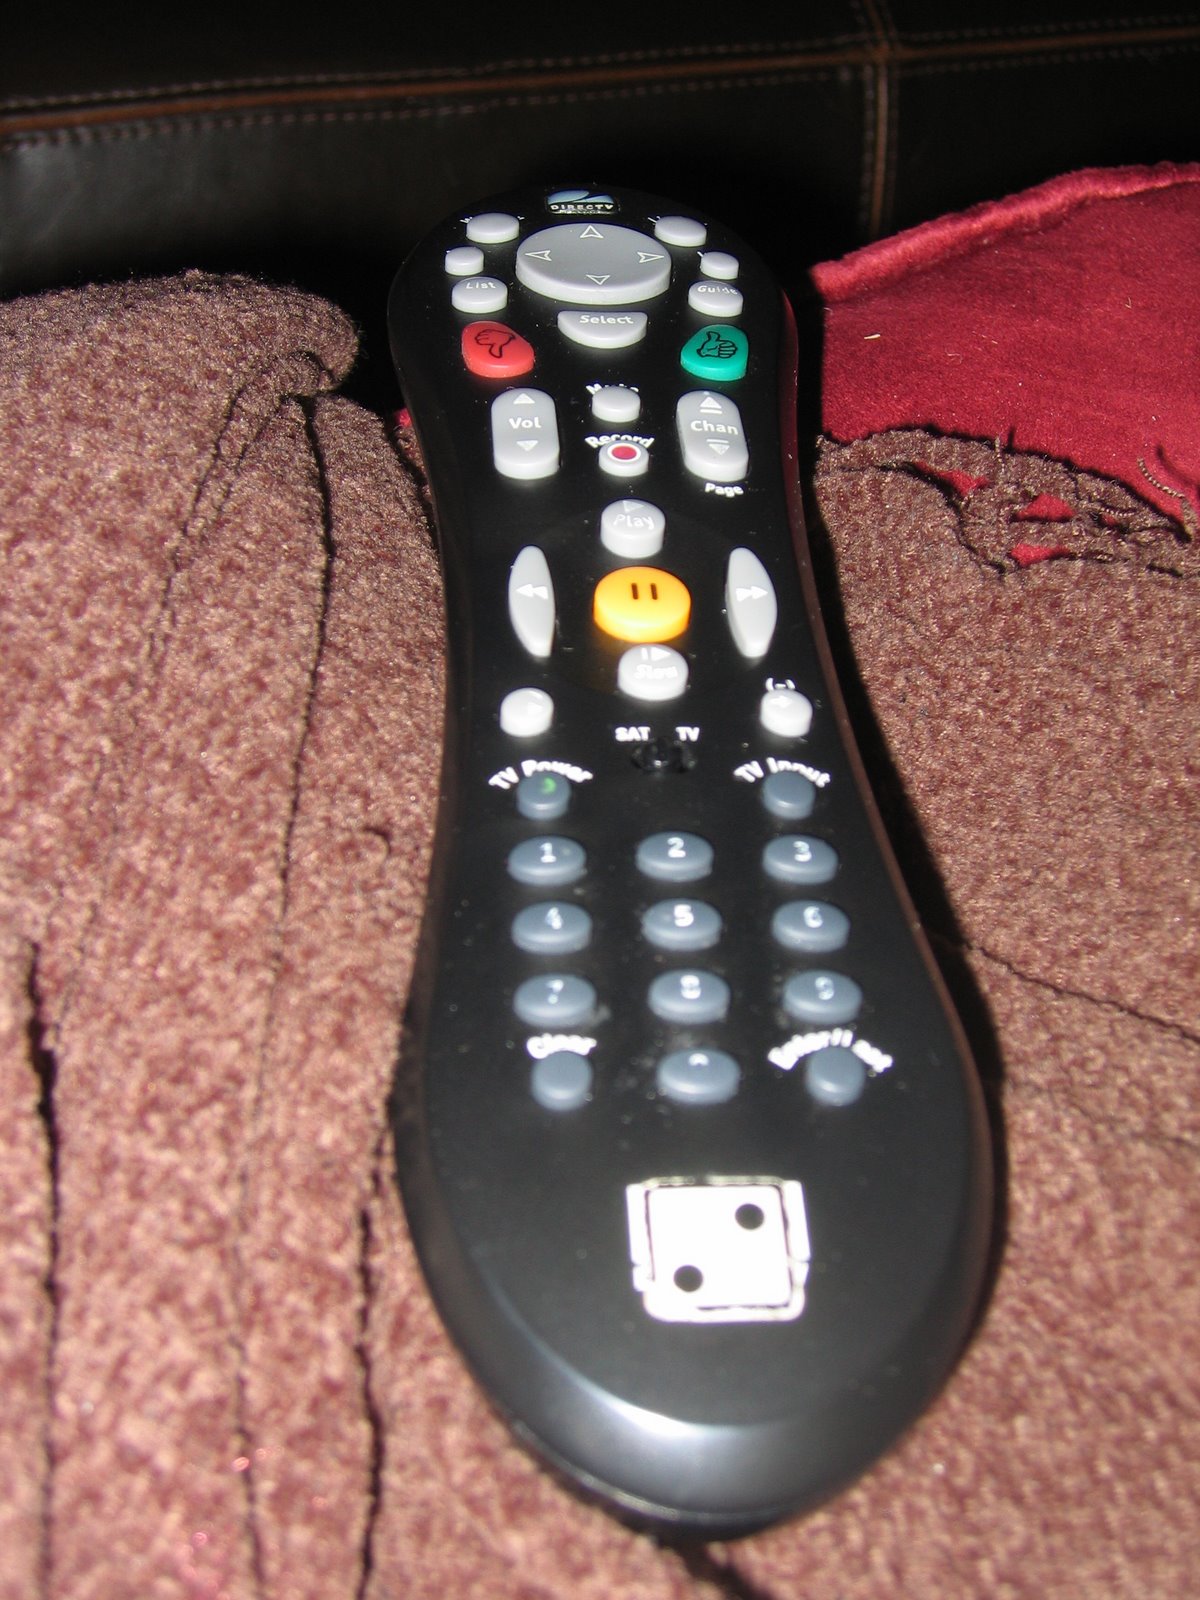 [TiVo+Remote.jpg]